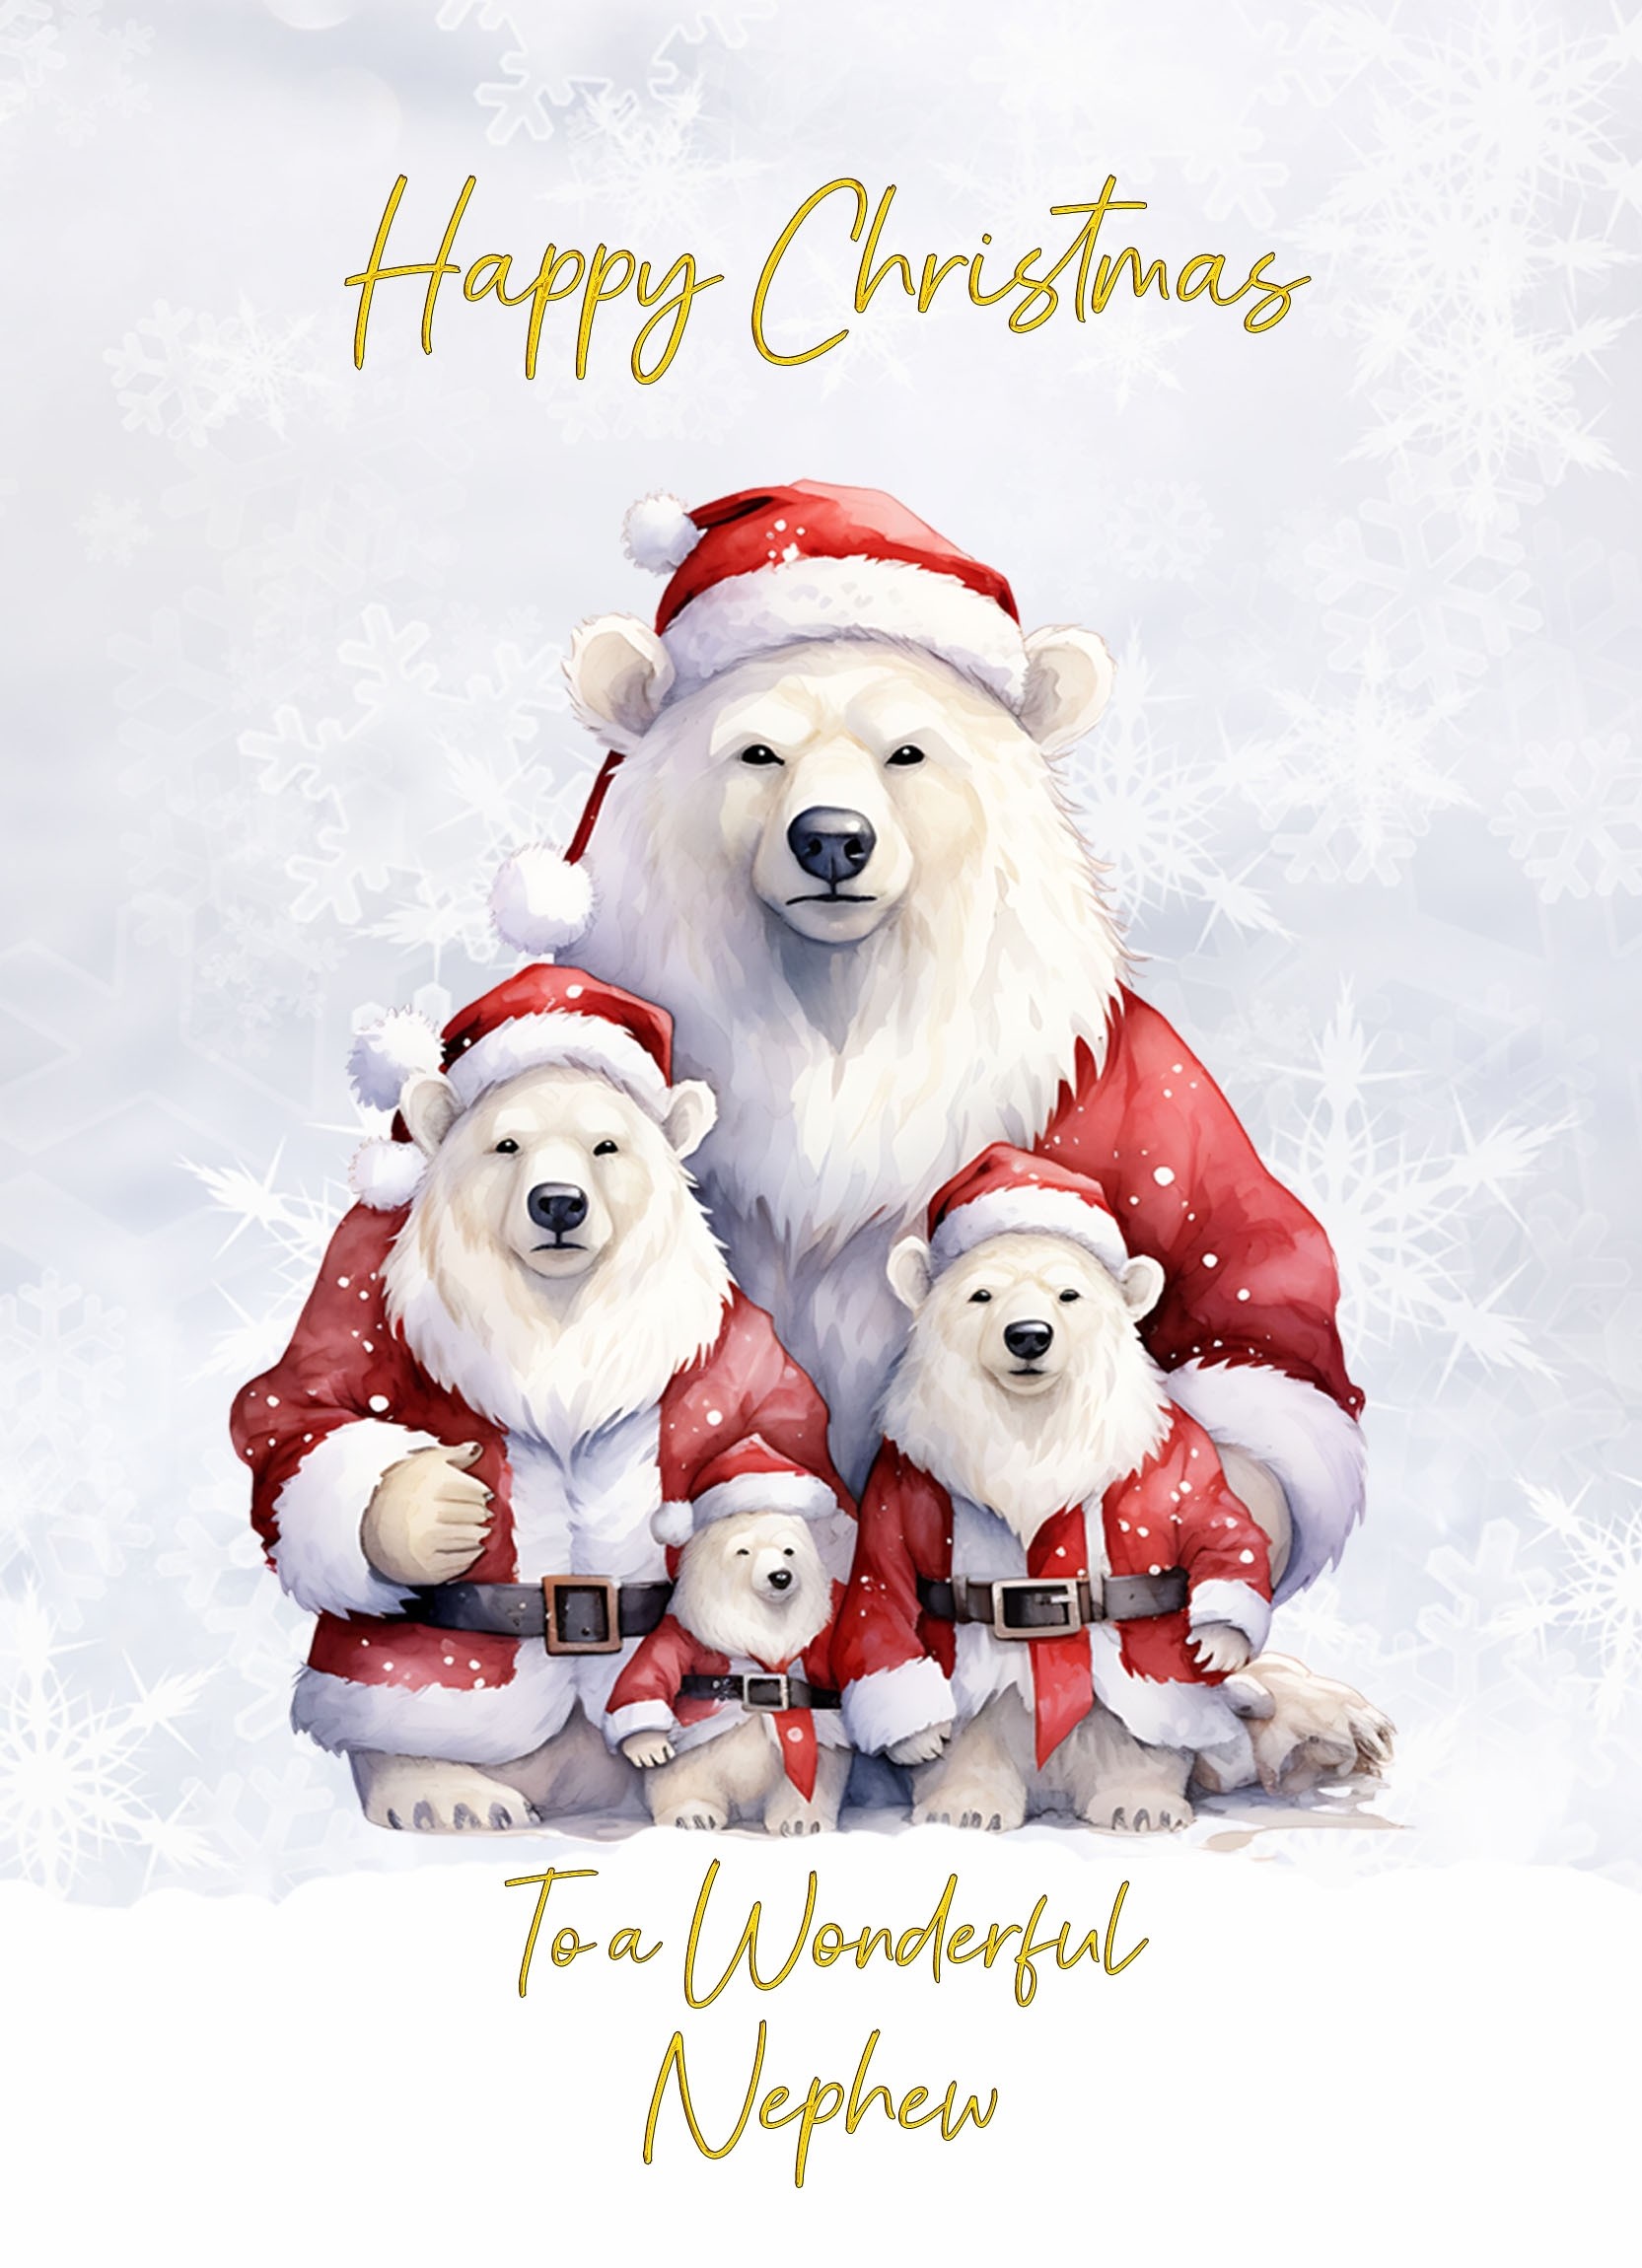 Christmas Card For Nephew (Polar Bear Family Art)